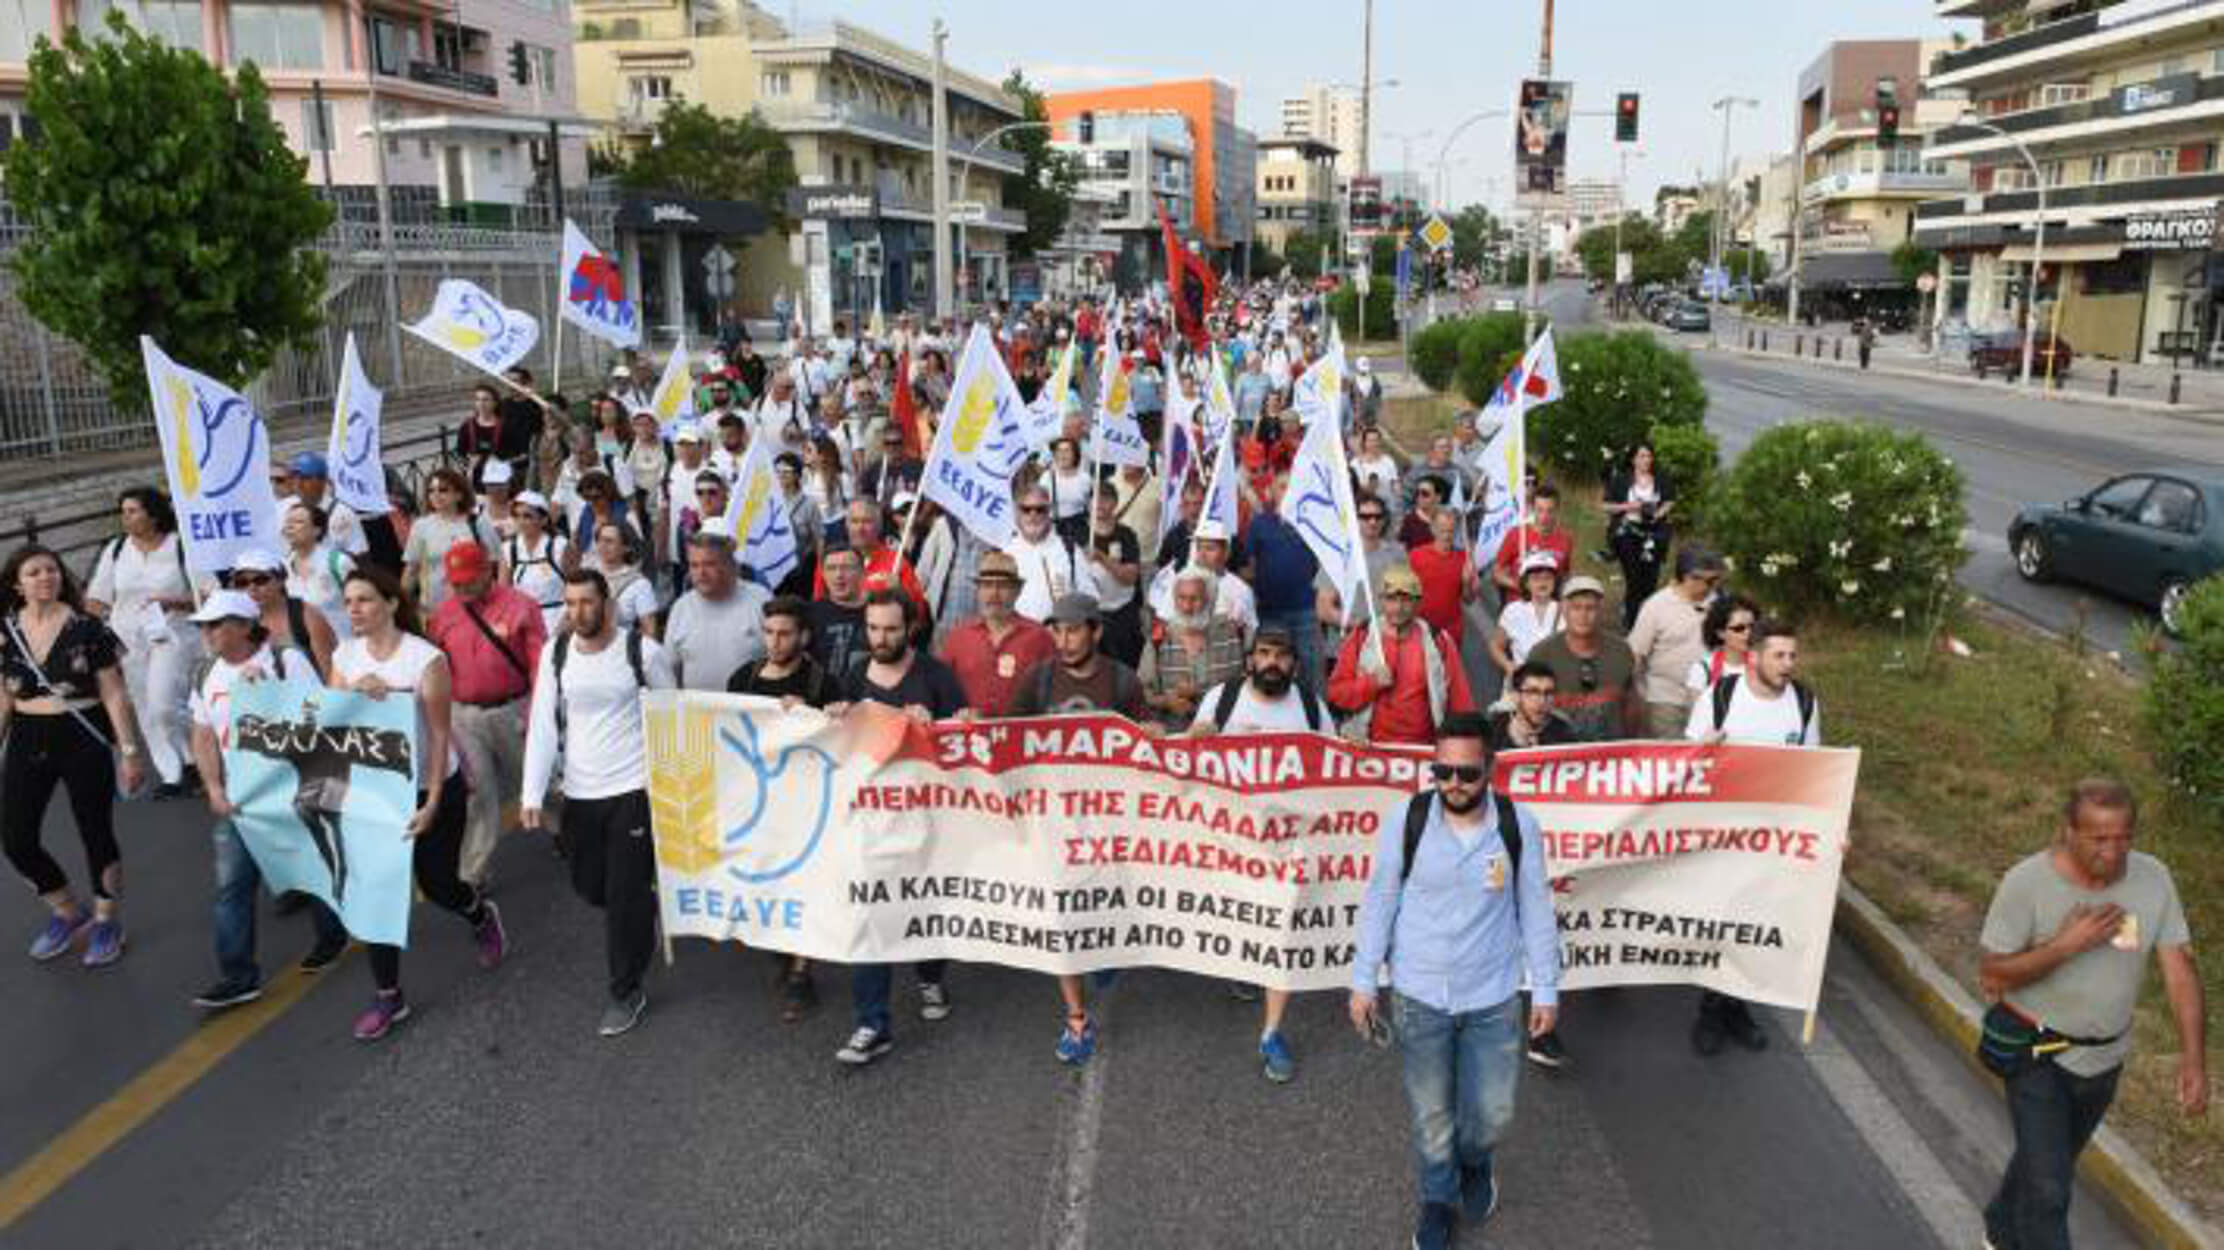 Κυκλοφοριακές ρυθμίσεις στην Αθήνα για την 39η Μαραθώνια Πορεία Ειρήνης